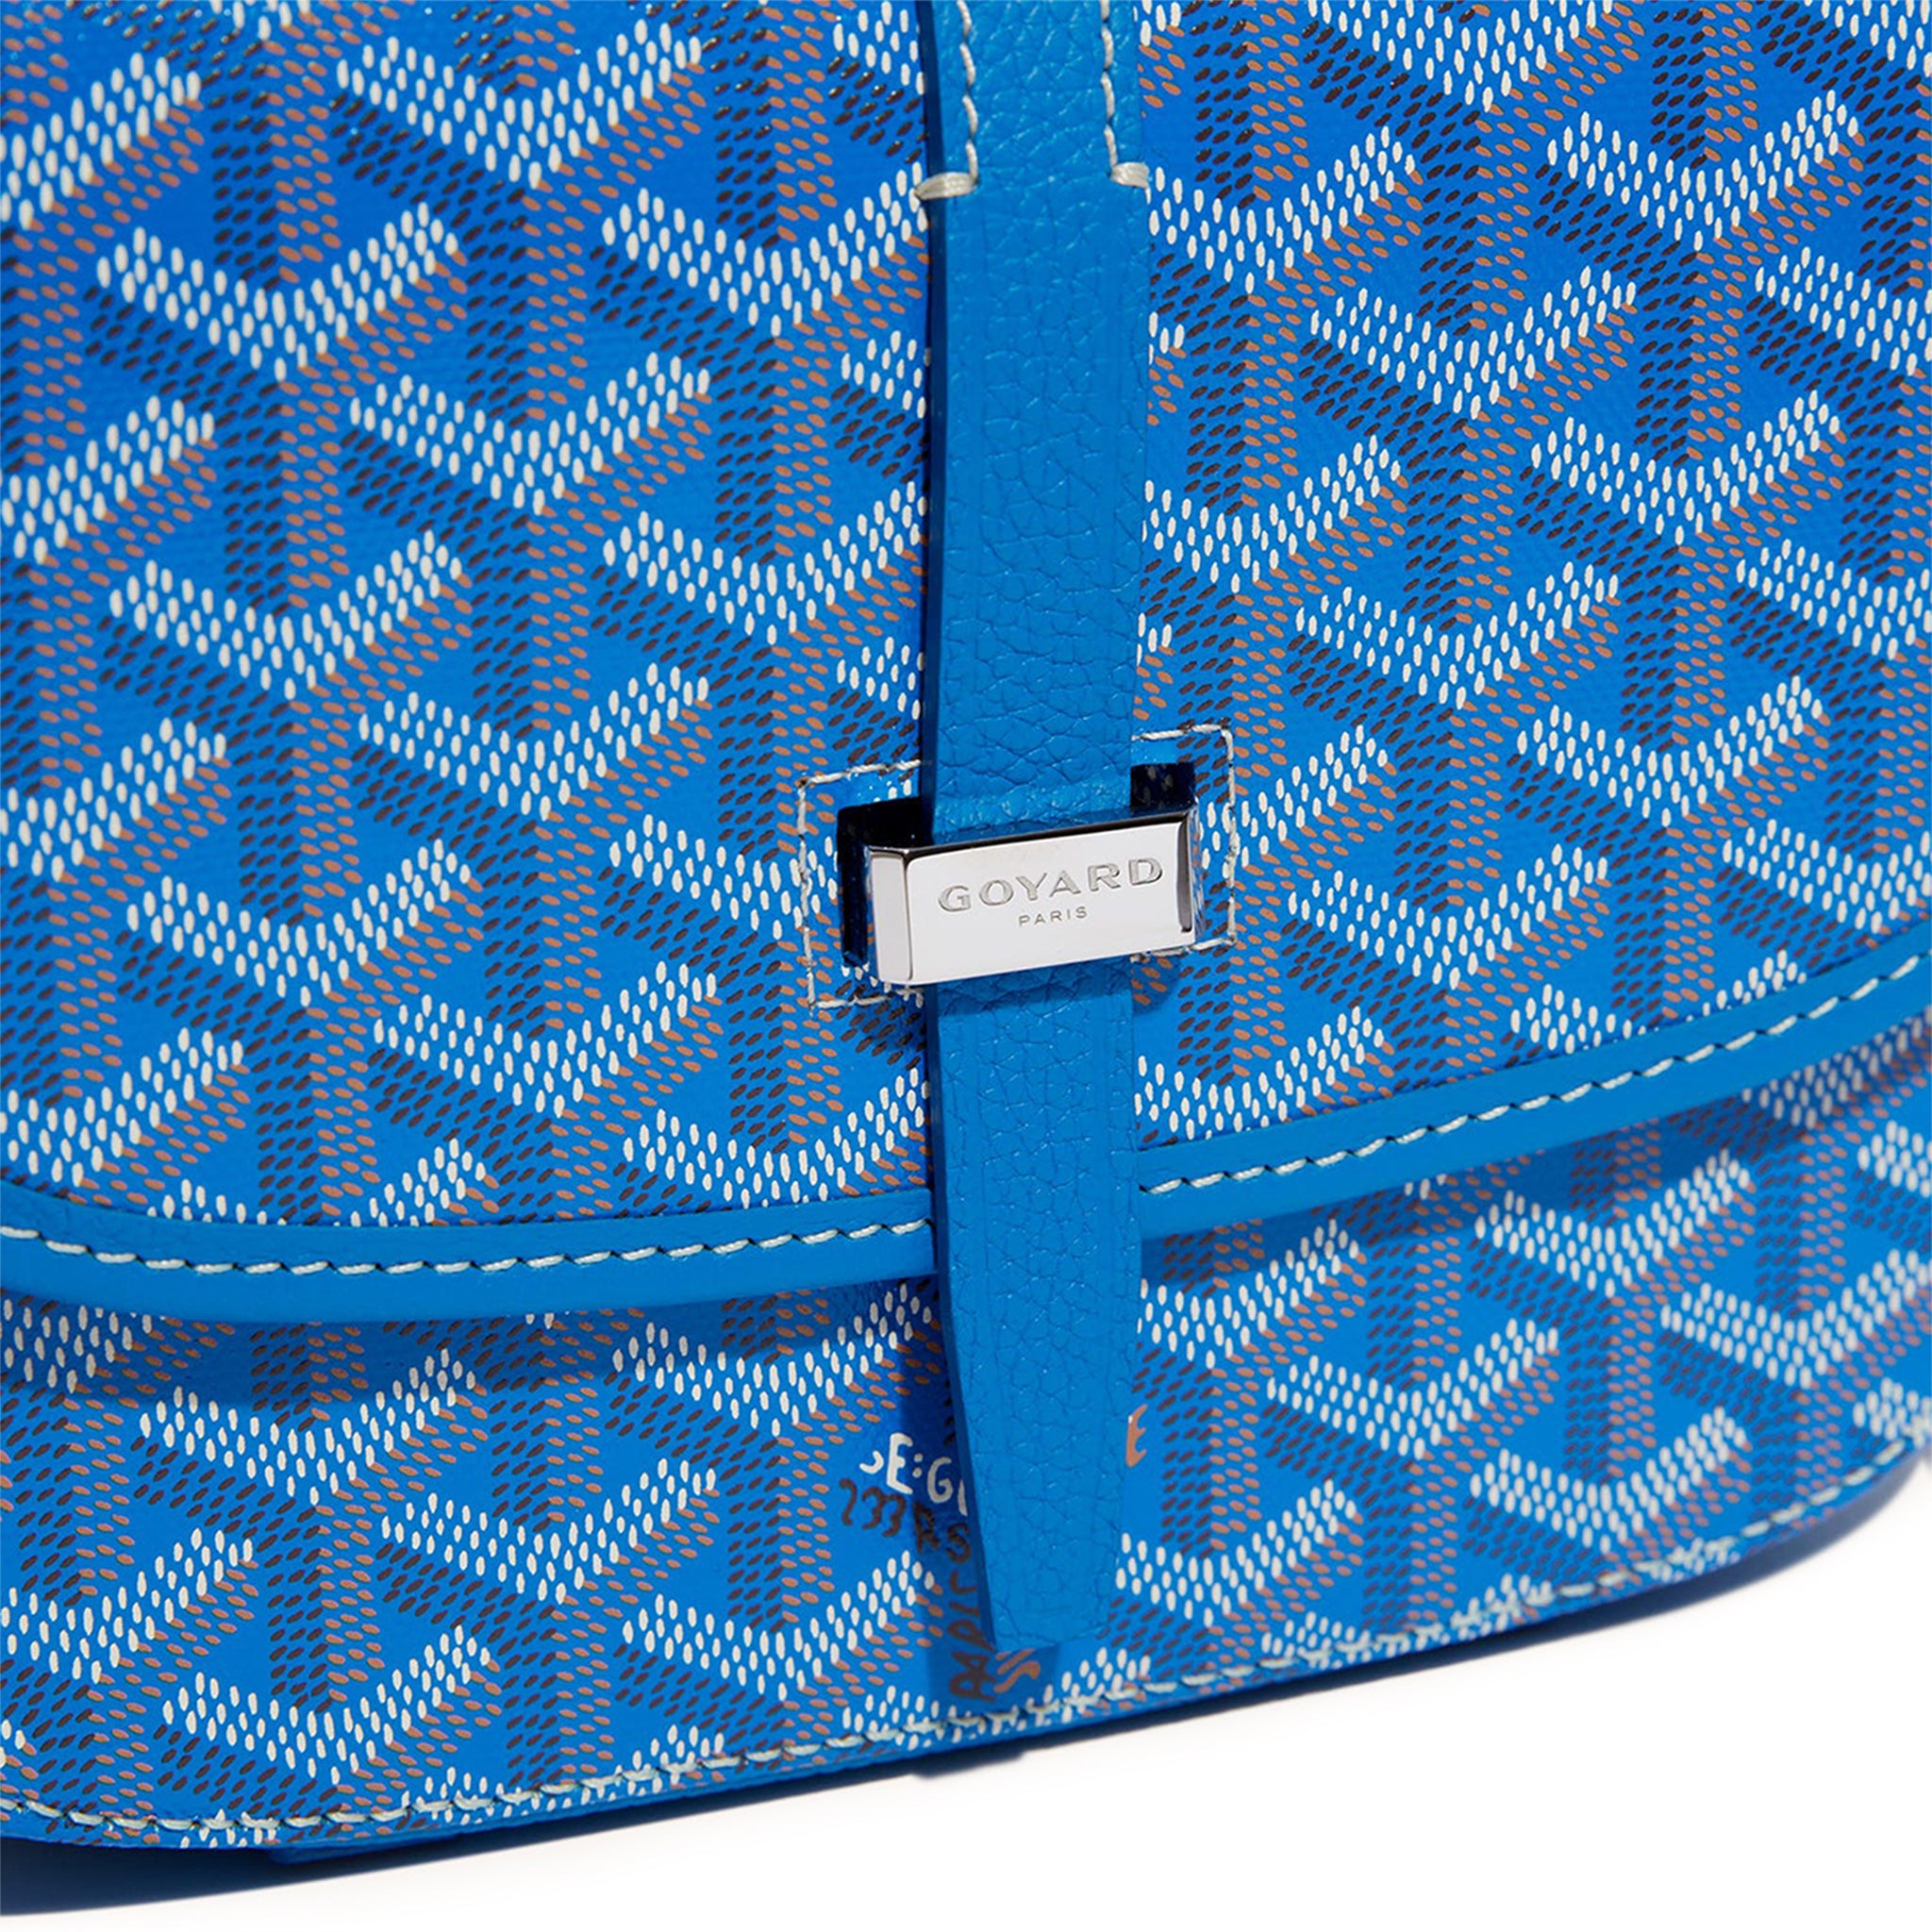 blue goyard messenger bag